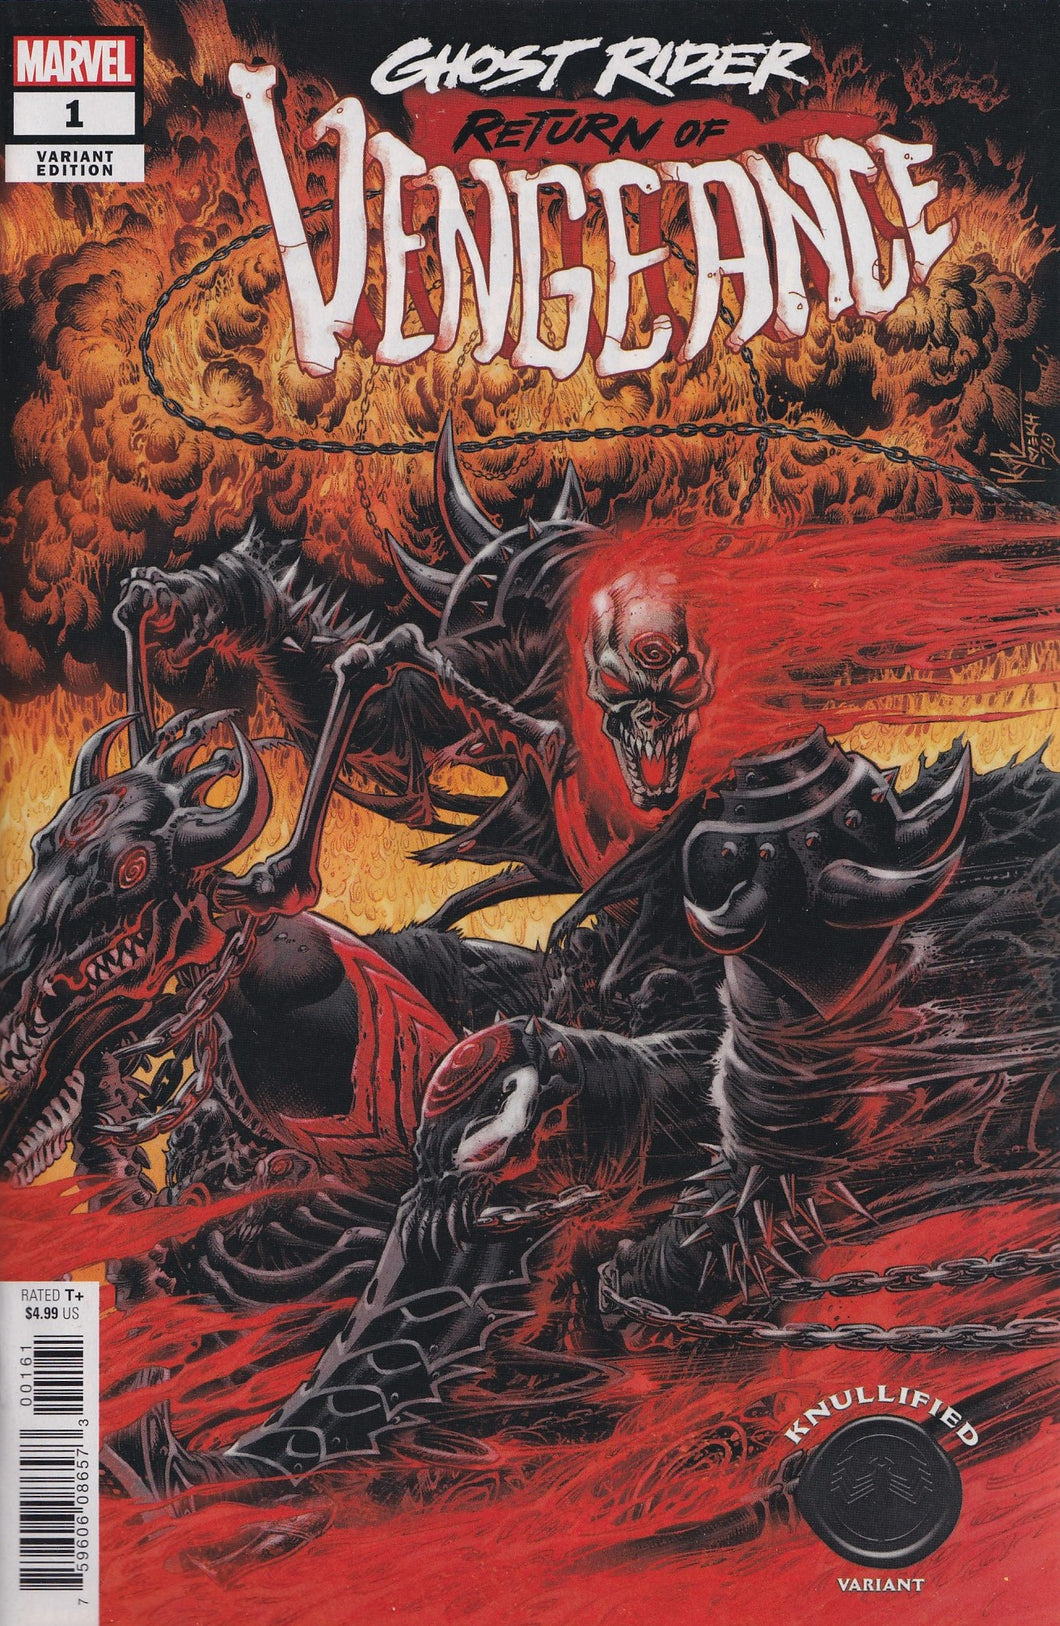 GHOST RIDER: RETURN OF VENGEANCE #1 (KYLE HOTZ VARIANT) COMIC ~ Marvel Comics